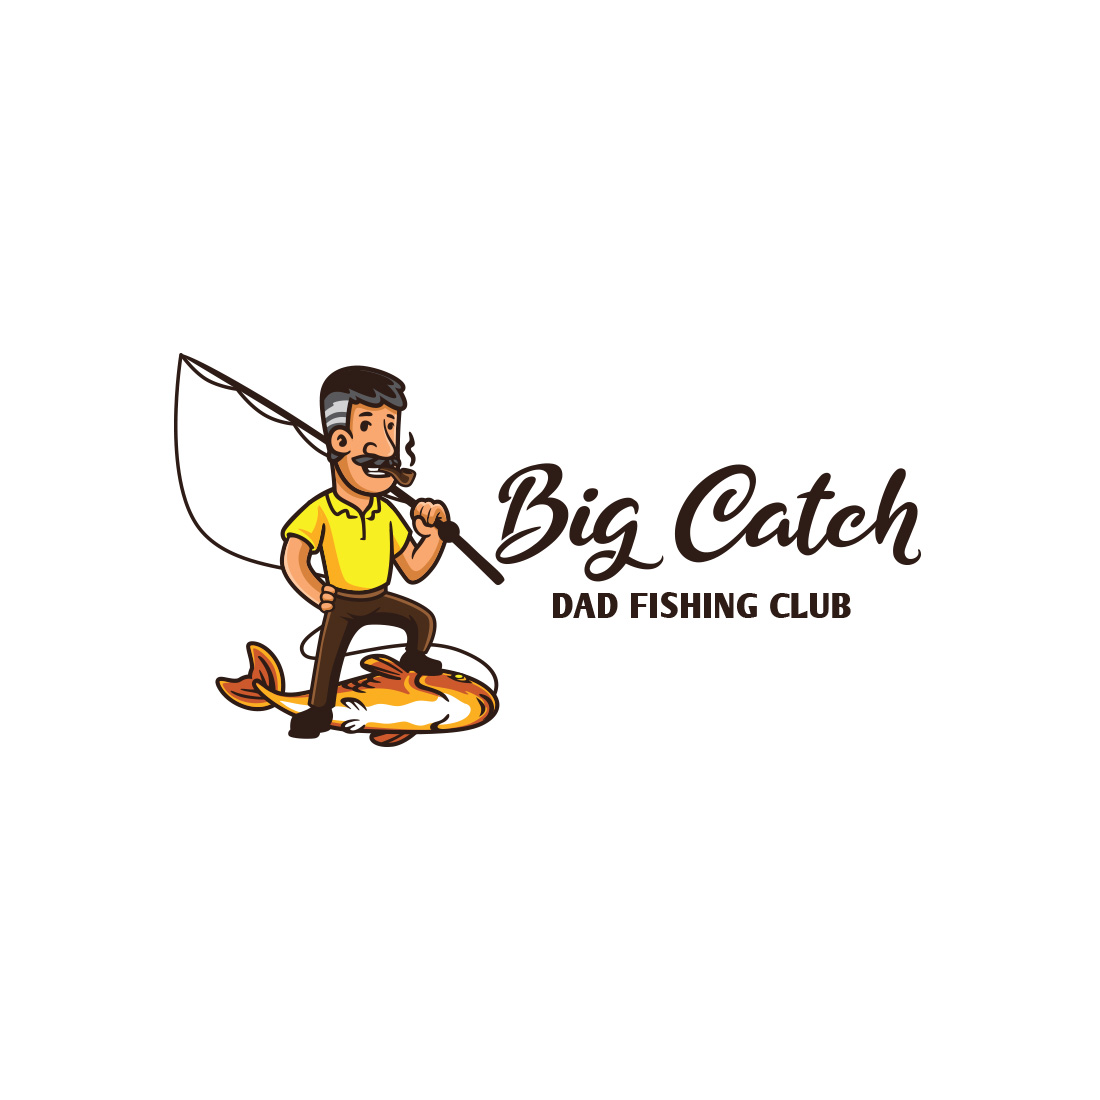 Dad Fishing Club Logo cover image.